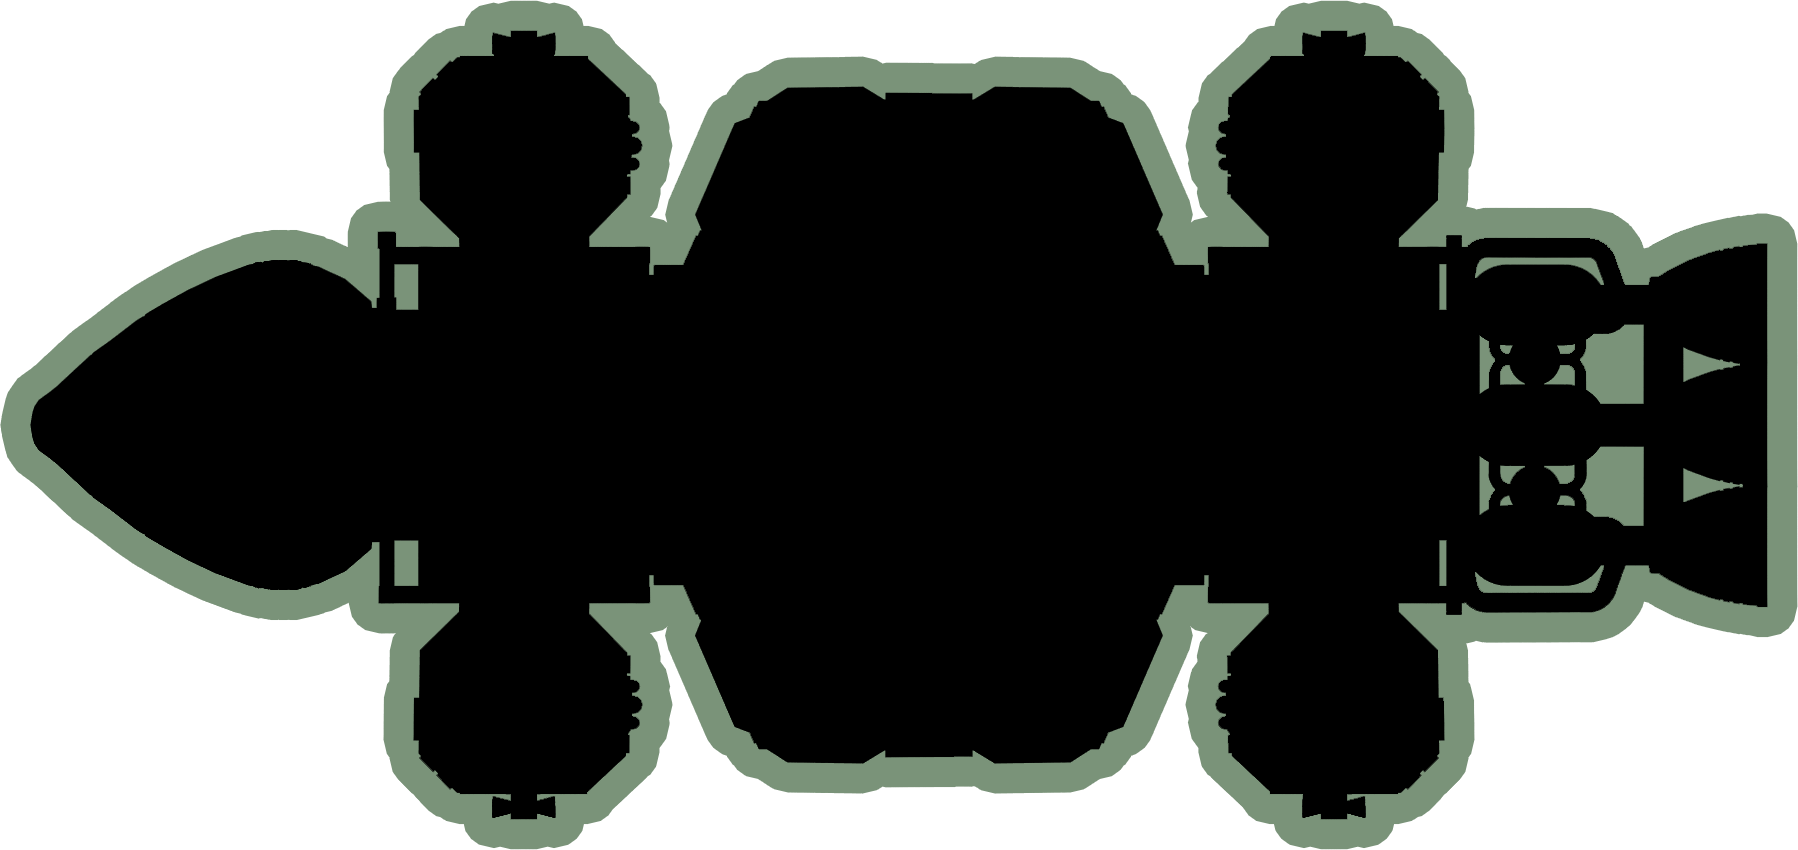 Dorsal Outline of Frigate